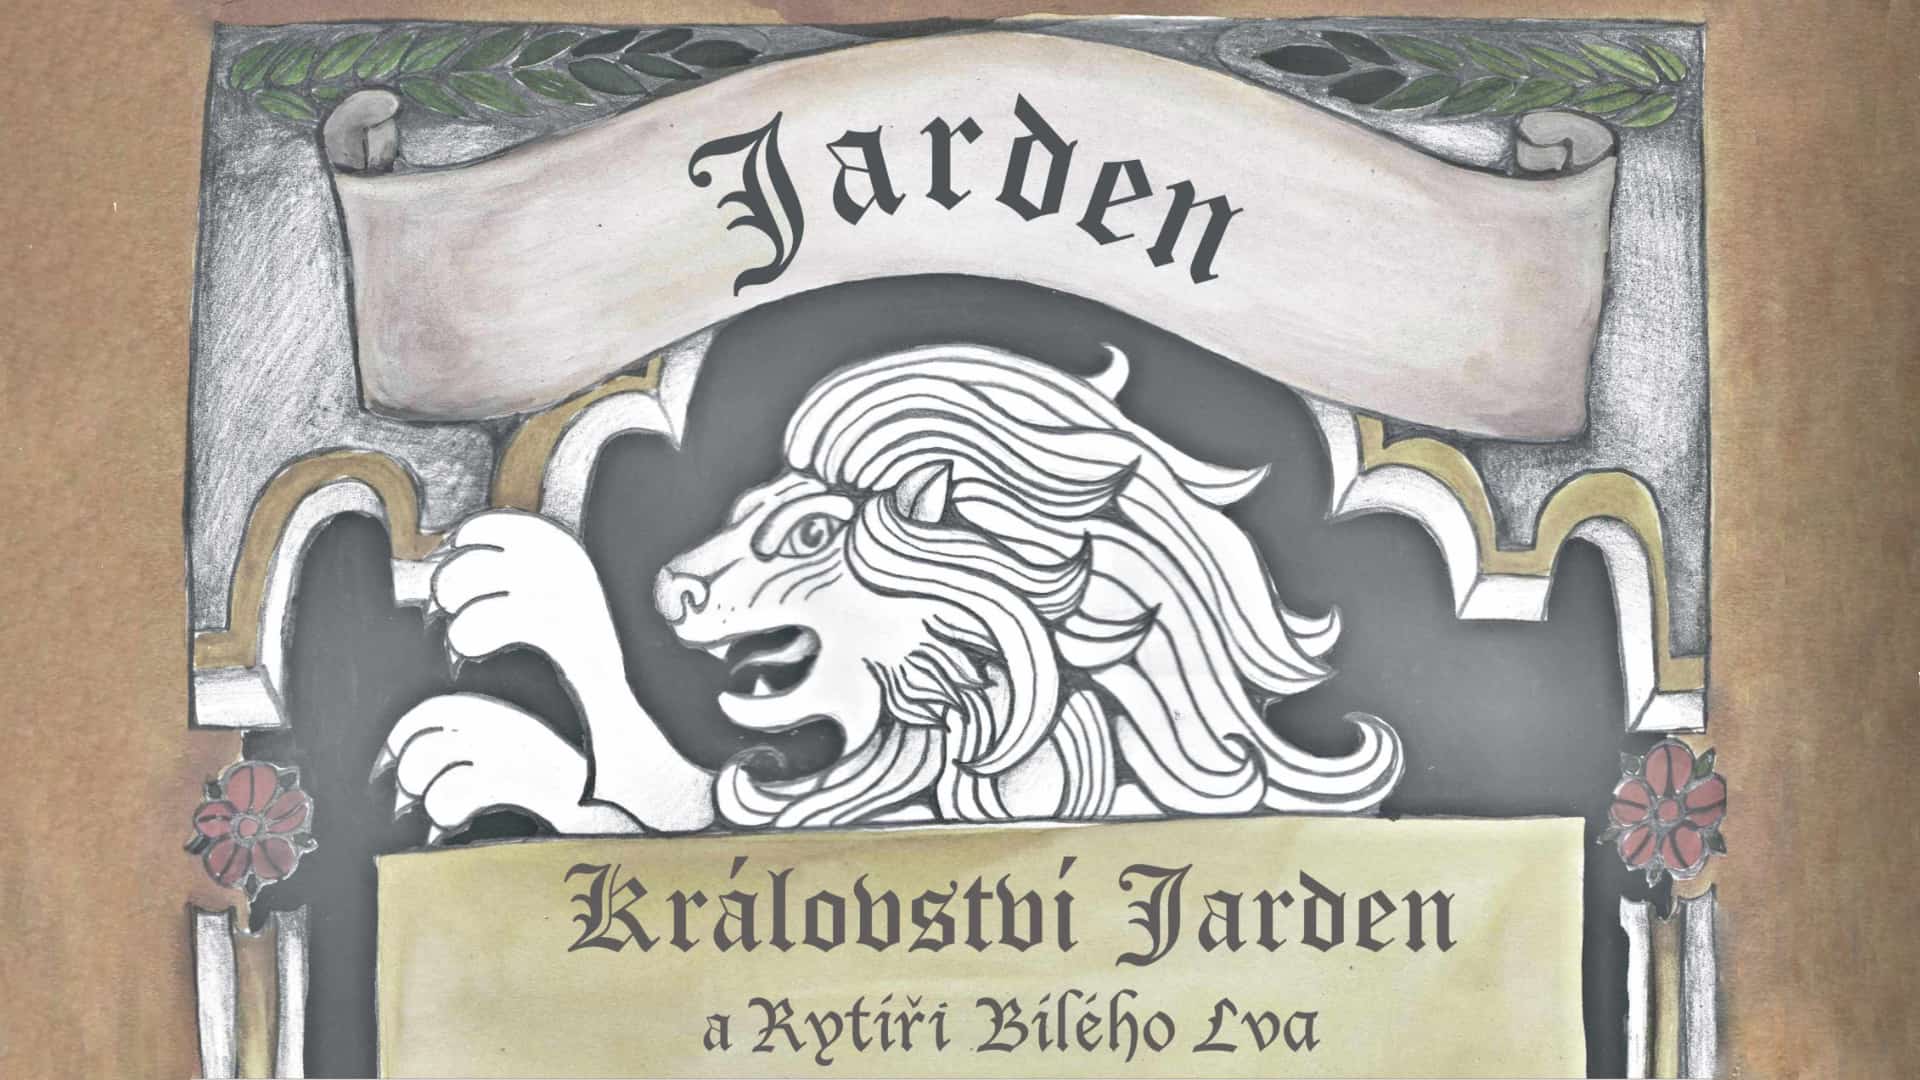 Království Jarden a rytíři Bílého lva 8